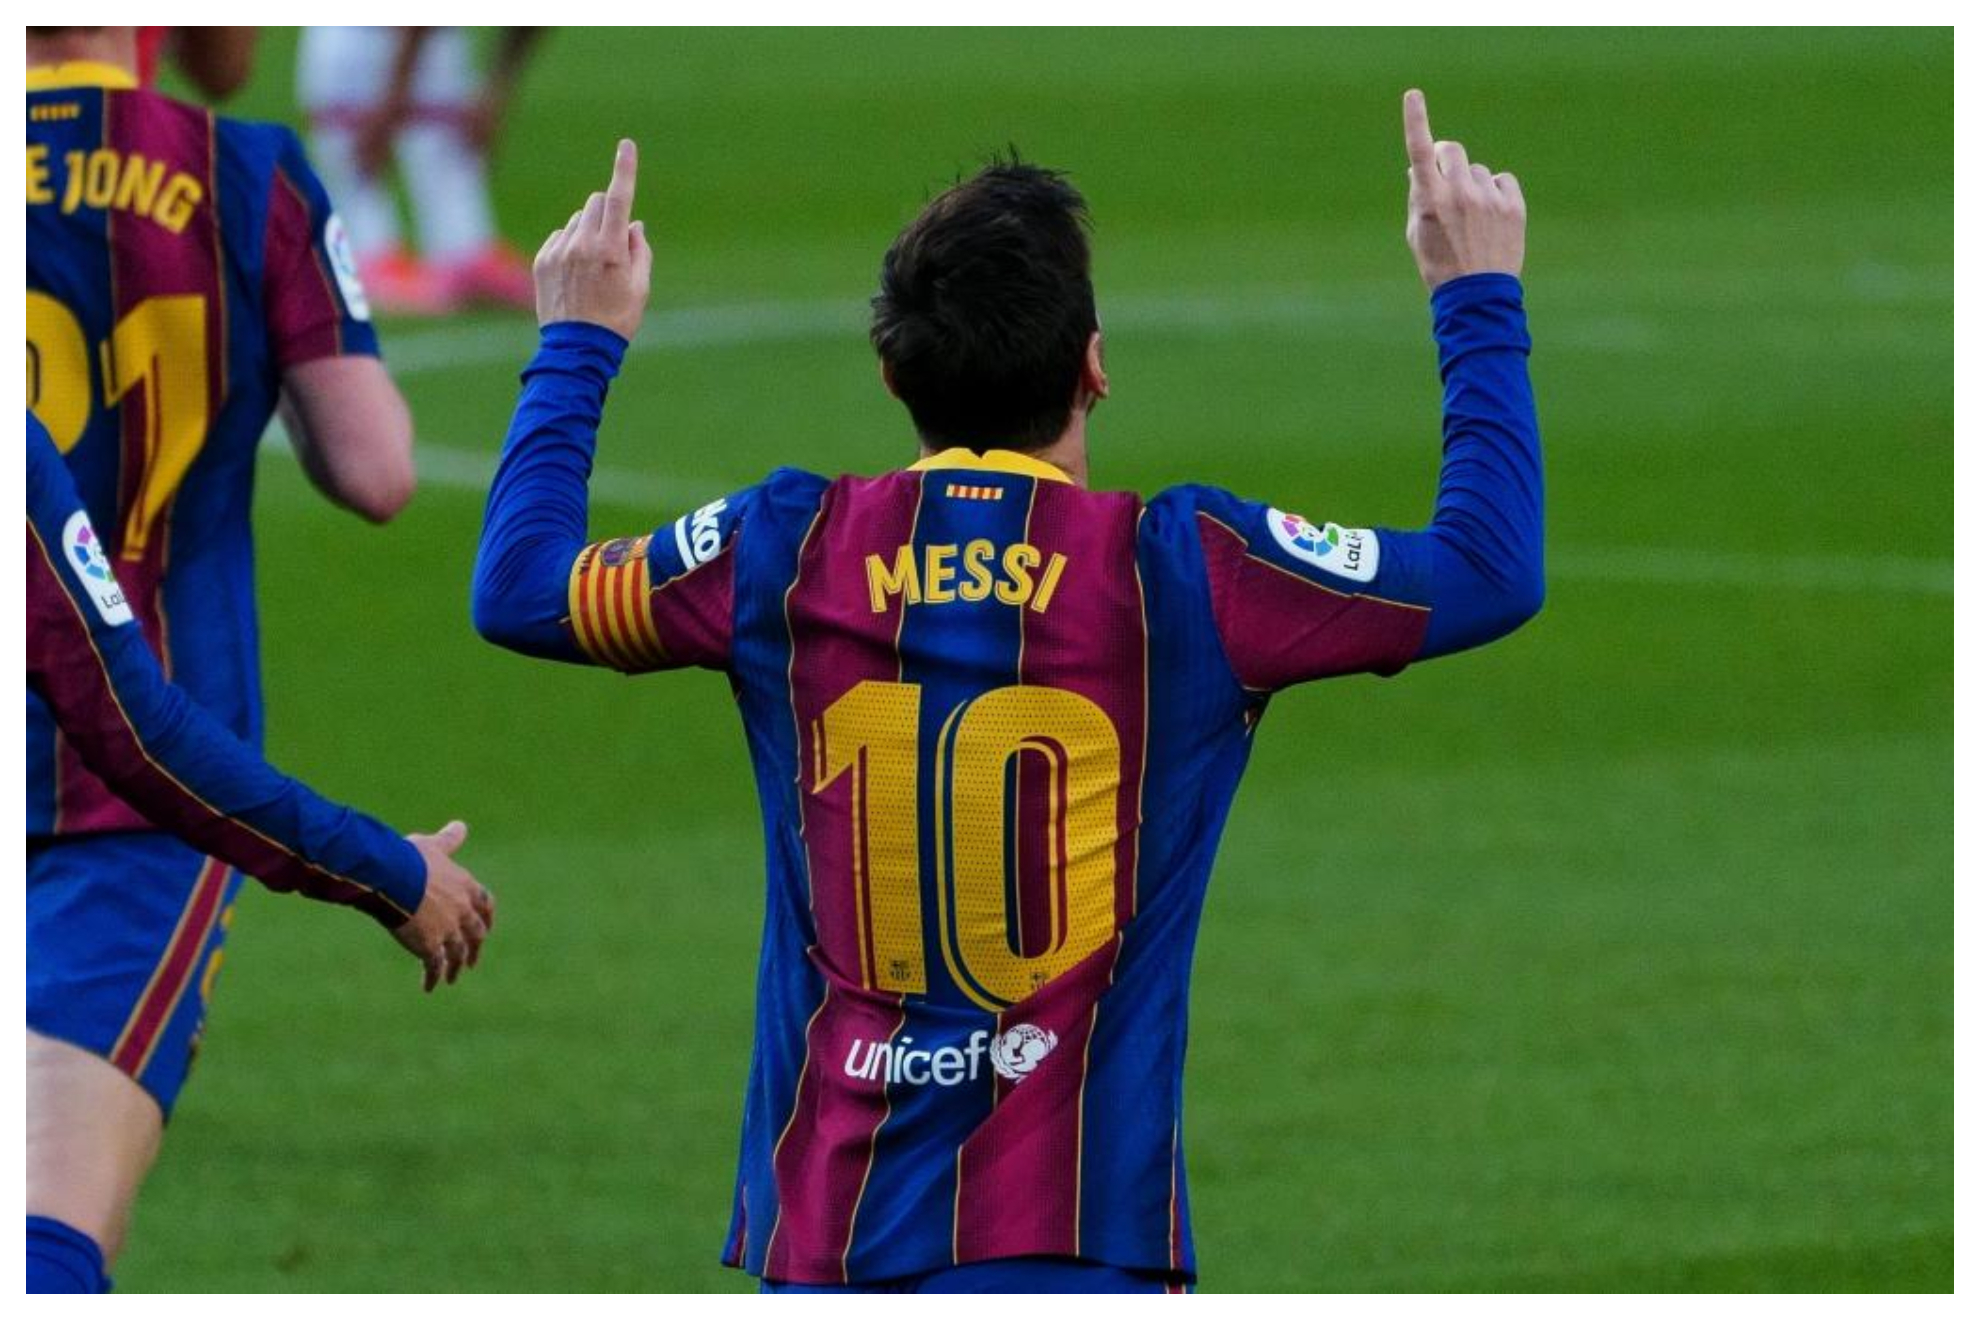 ¡El Barcelona confirma contactos con Messi!